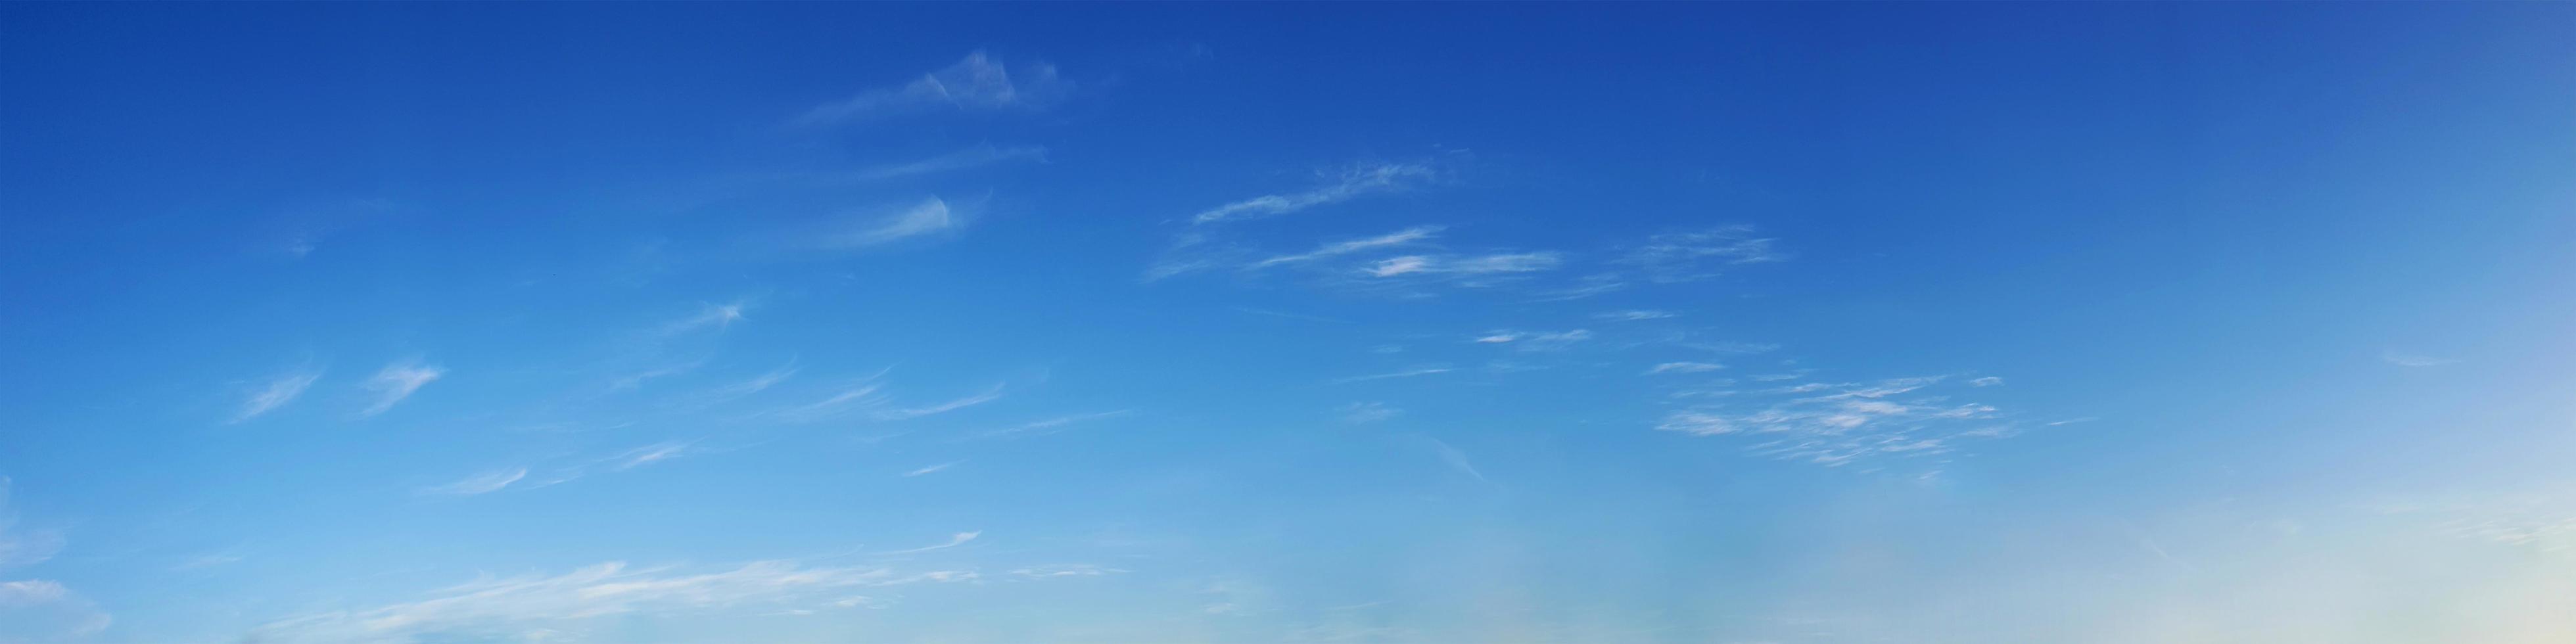 Panoramahimmel mit Wolken an einem sonnigen Tag. foto